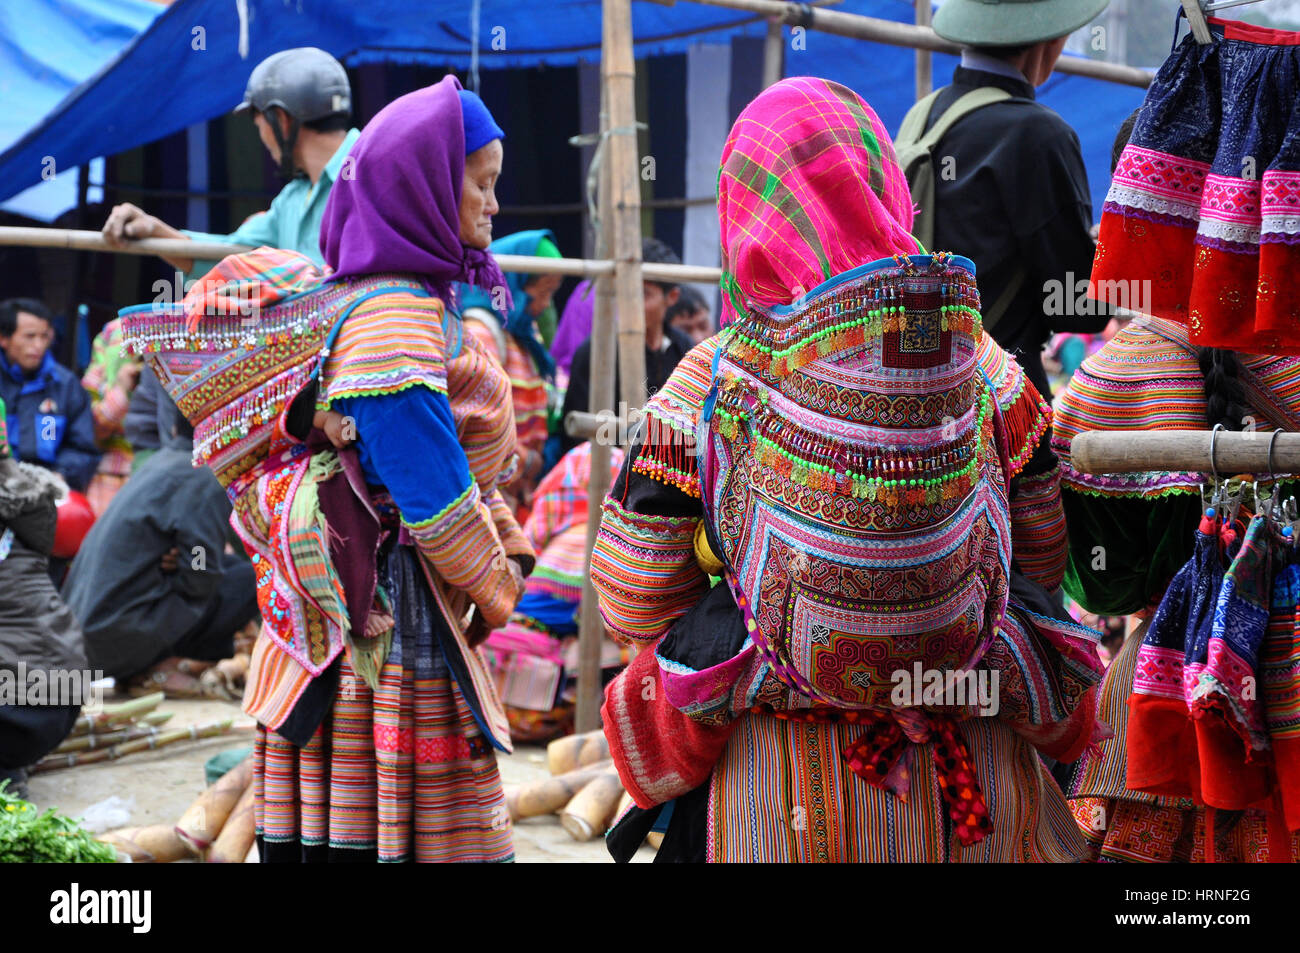 SAPA, Vietnam - 22 février 2013 : les femmes Hmong au marché de Bac Ha dans le nord du Vietnam. Bac Ha est marché hilltribe où les gens viennent au commerce des biens i Banque D'Images